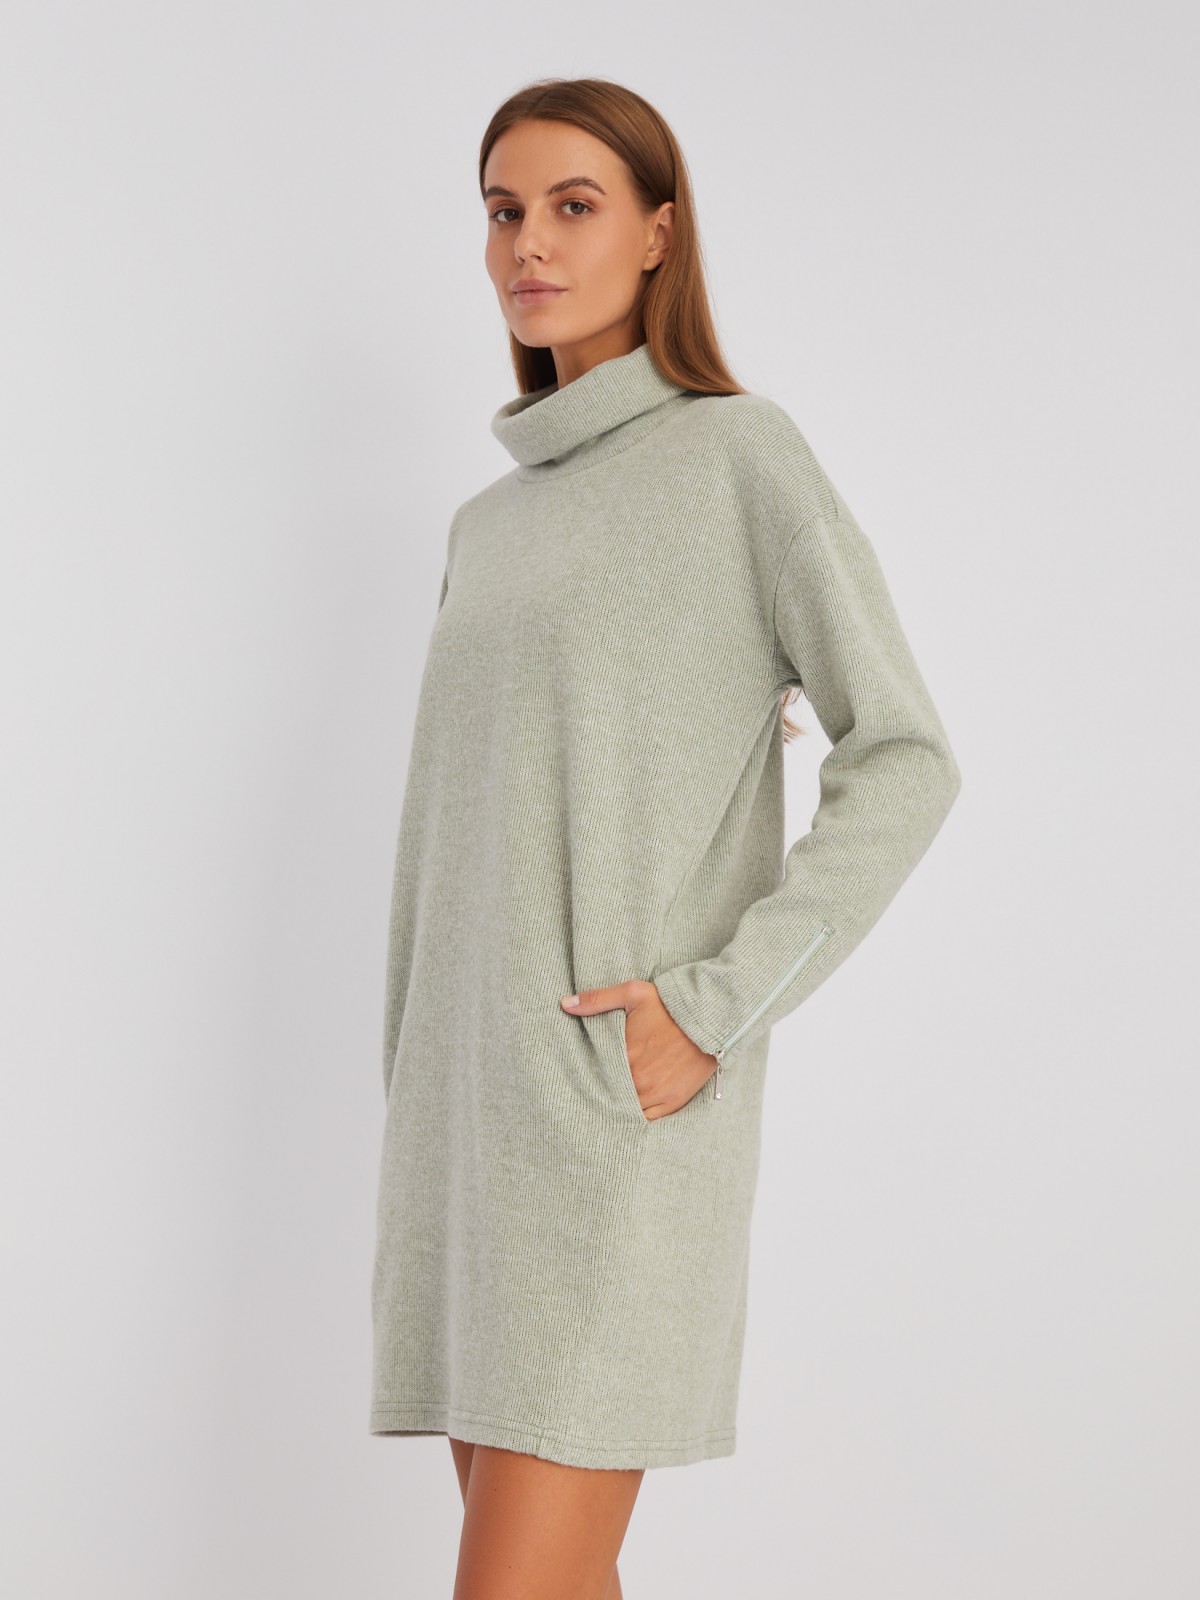 Трикотажное платье-свитер с высоким горлом и акцентом на манжетах zolla 02343819F032, цвет светло-зеленый, размер XS